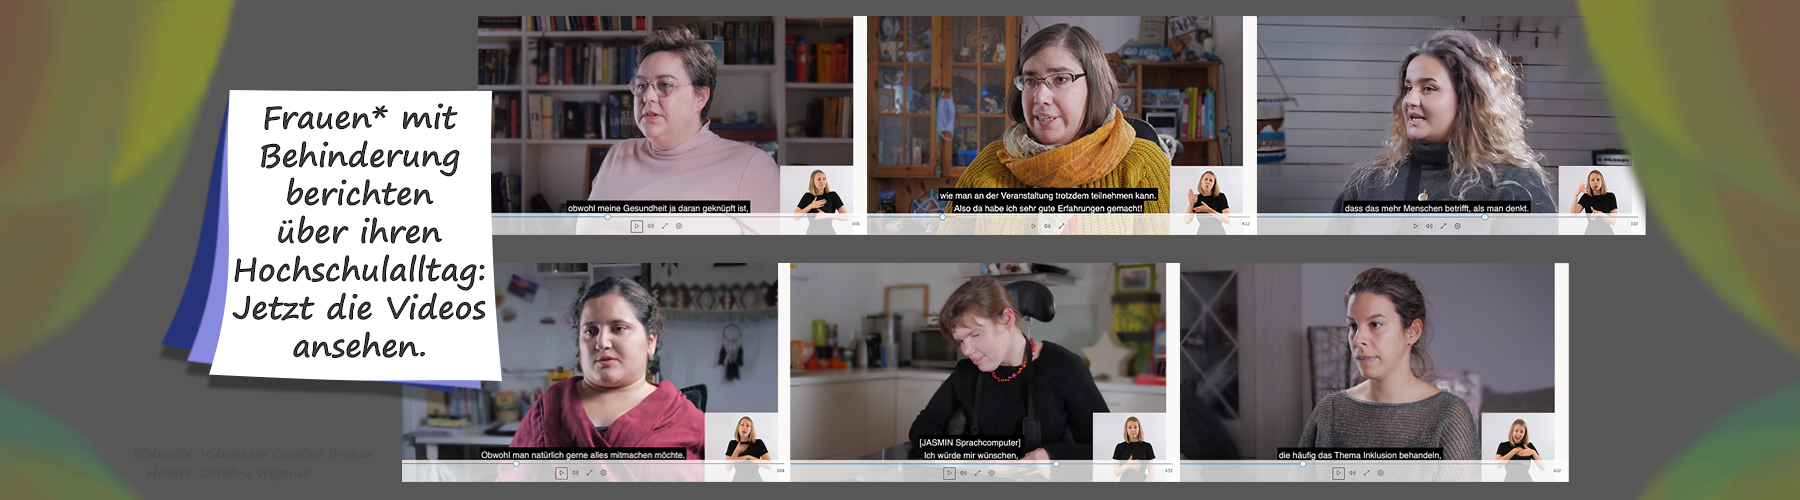 Alternativtext: Dieses Headerbild zeigt eine Fotocollage mit sechs Frauen, die in einem Videoplayer sind. Auf einer Schrifttafel steht: Frauen mit Behinderung berchten über ihren Hochschulalltag: Jetzt die Videos ansehen.